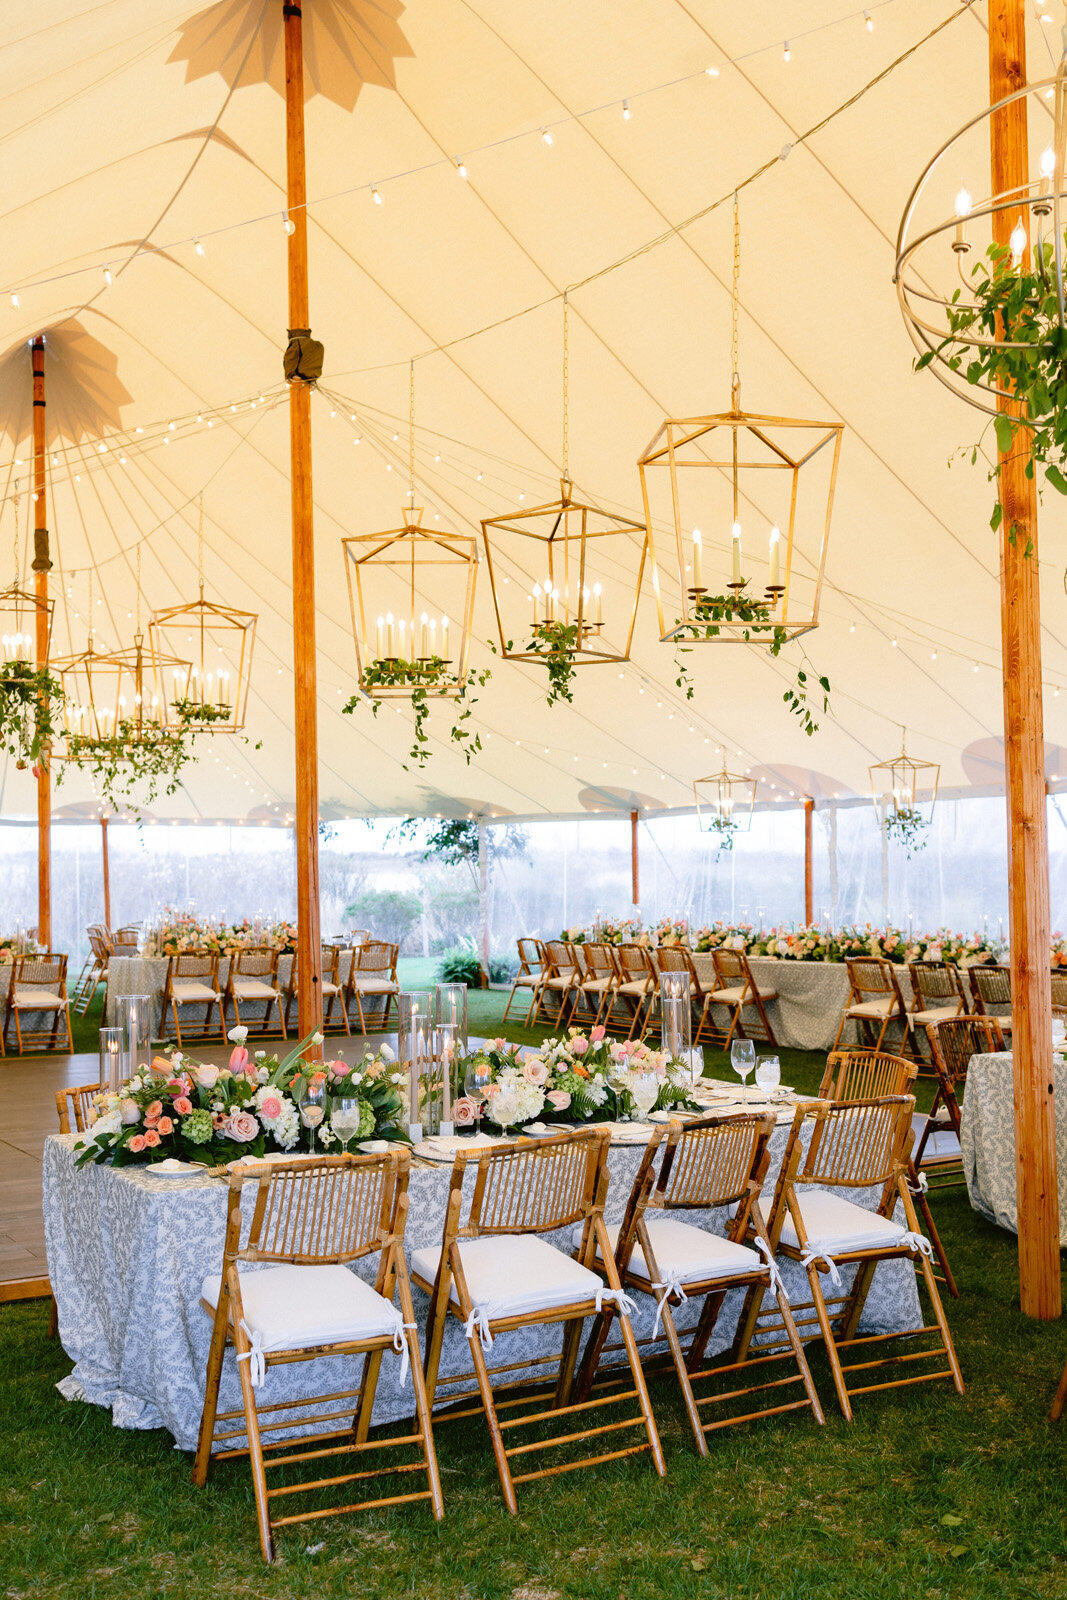 Kate-Murtaugh-Events-Weekapaug-Inn-Sperry-tent-greenery-lighting-wedding-garland